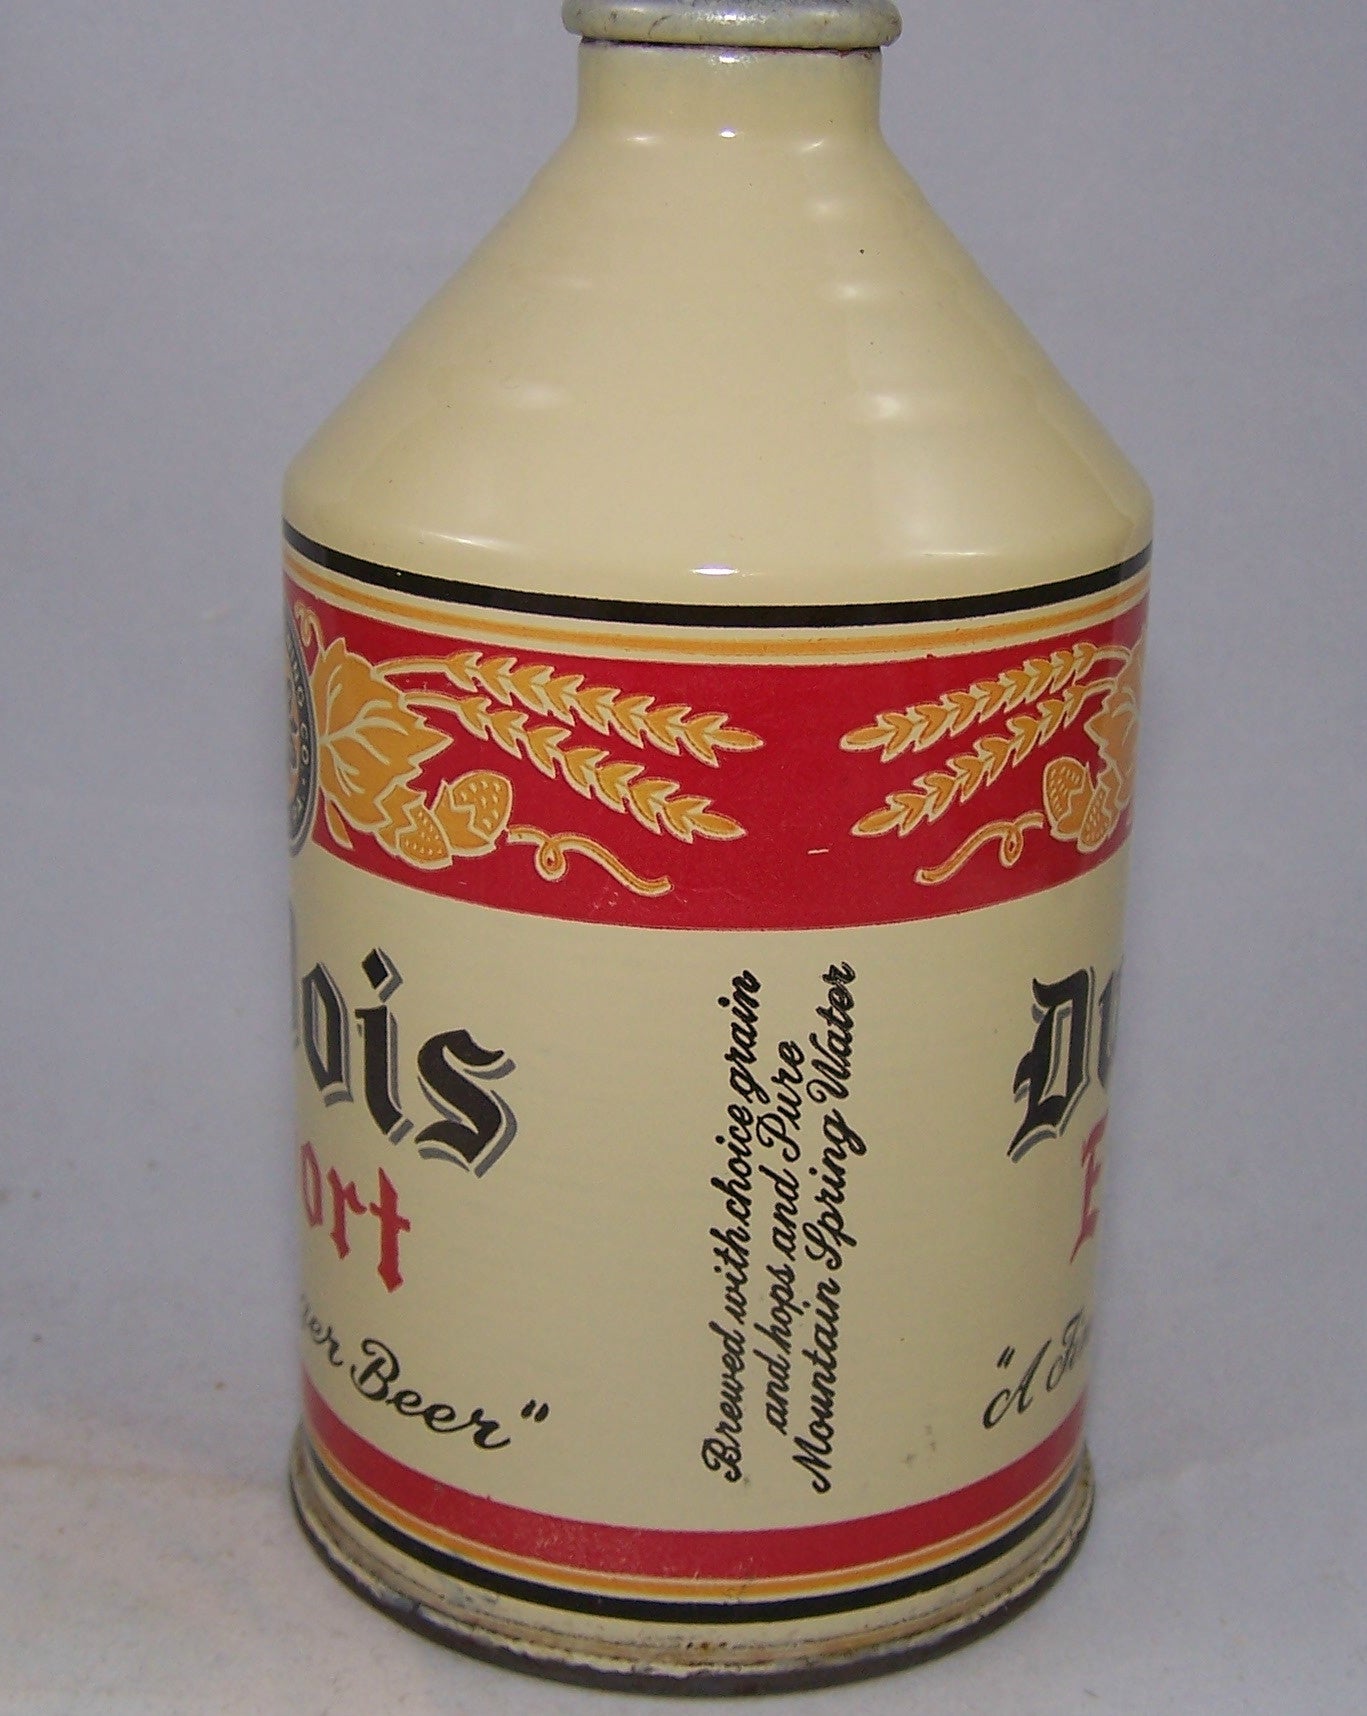 Du Bois Export " A fine Lager Beer" USBC 193-05, Grade A1+ Sold on 01/10/17